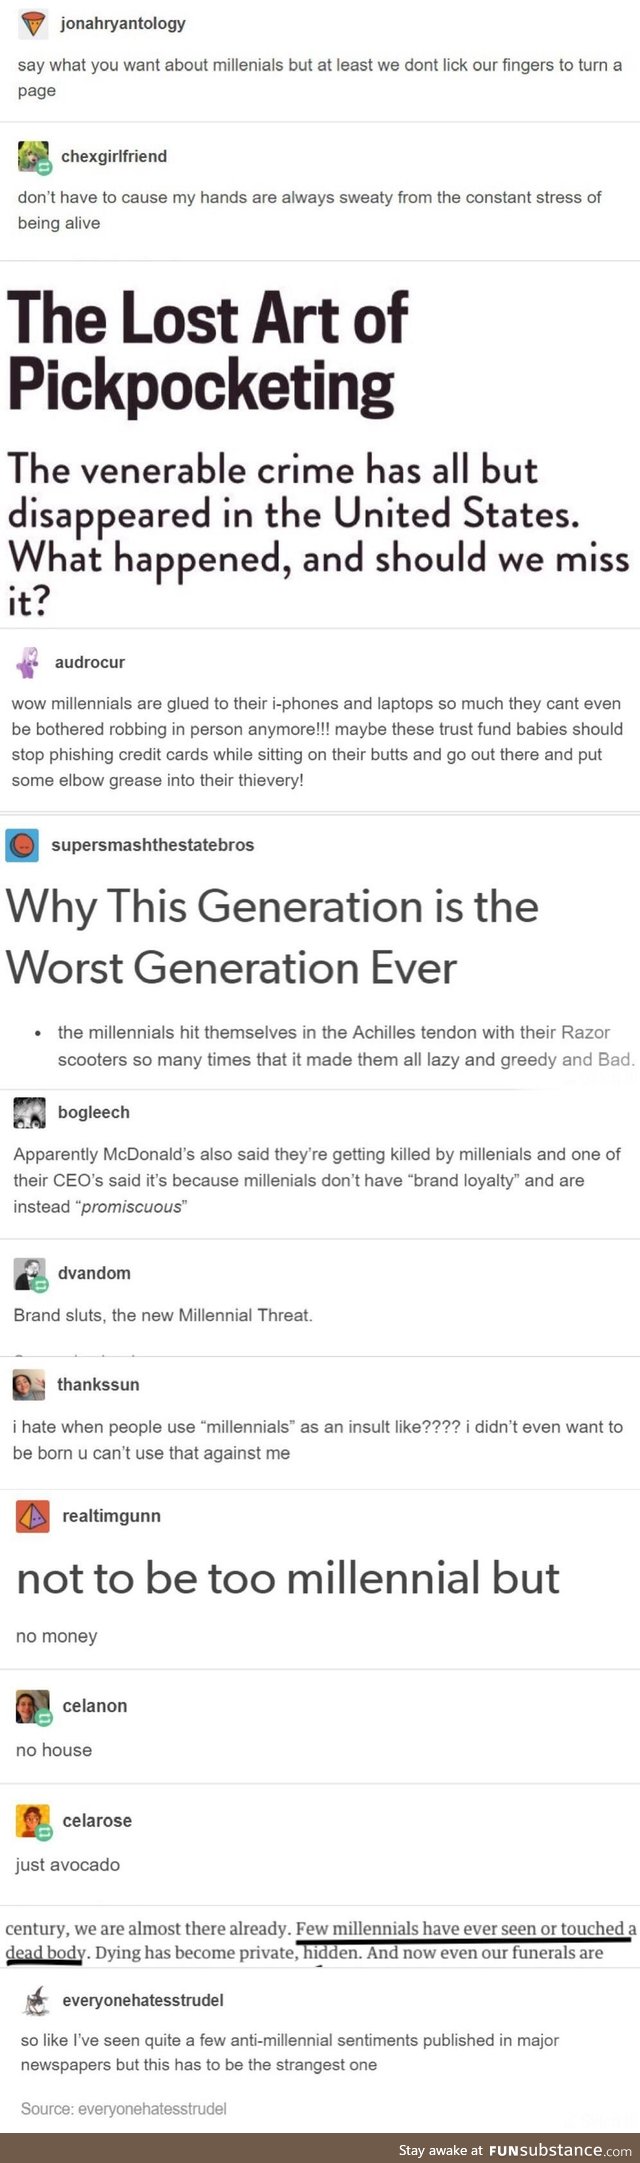 millennials do the darndest things